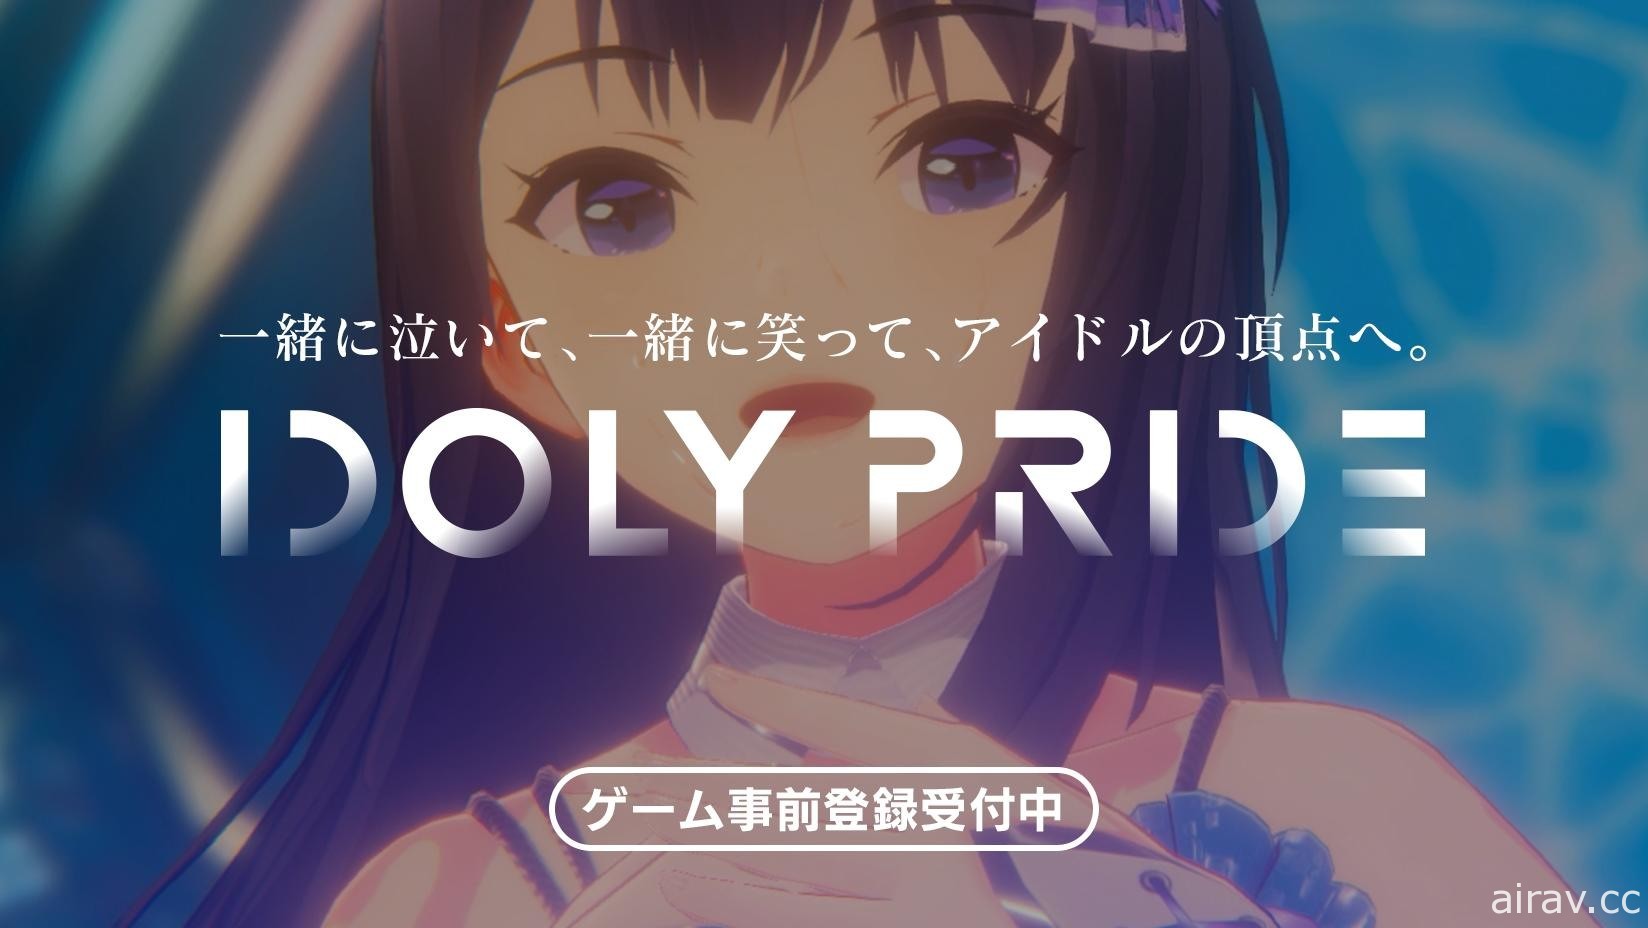 大型多媒體偶像企劃《IDOLY PRIDE》開放事前登錄 預計今年春季於日本推出